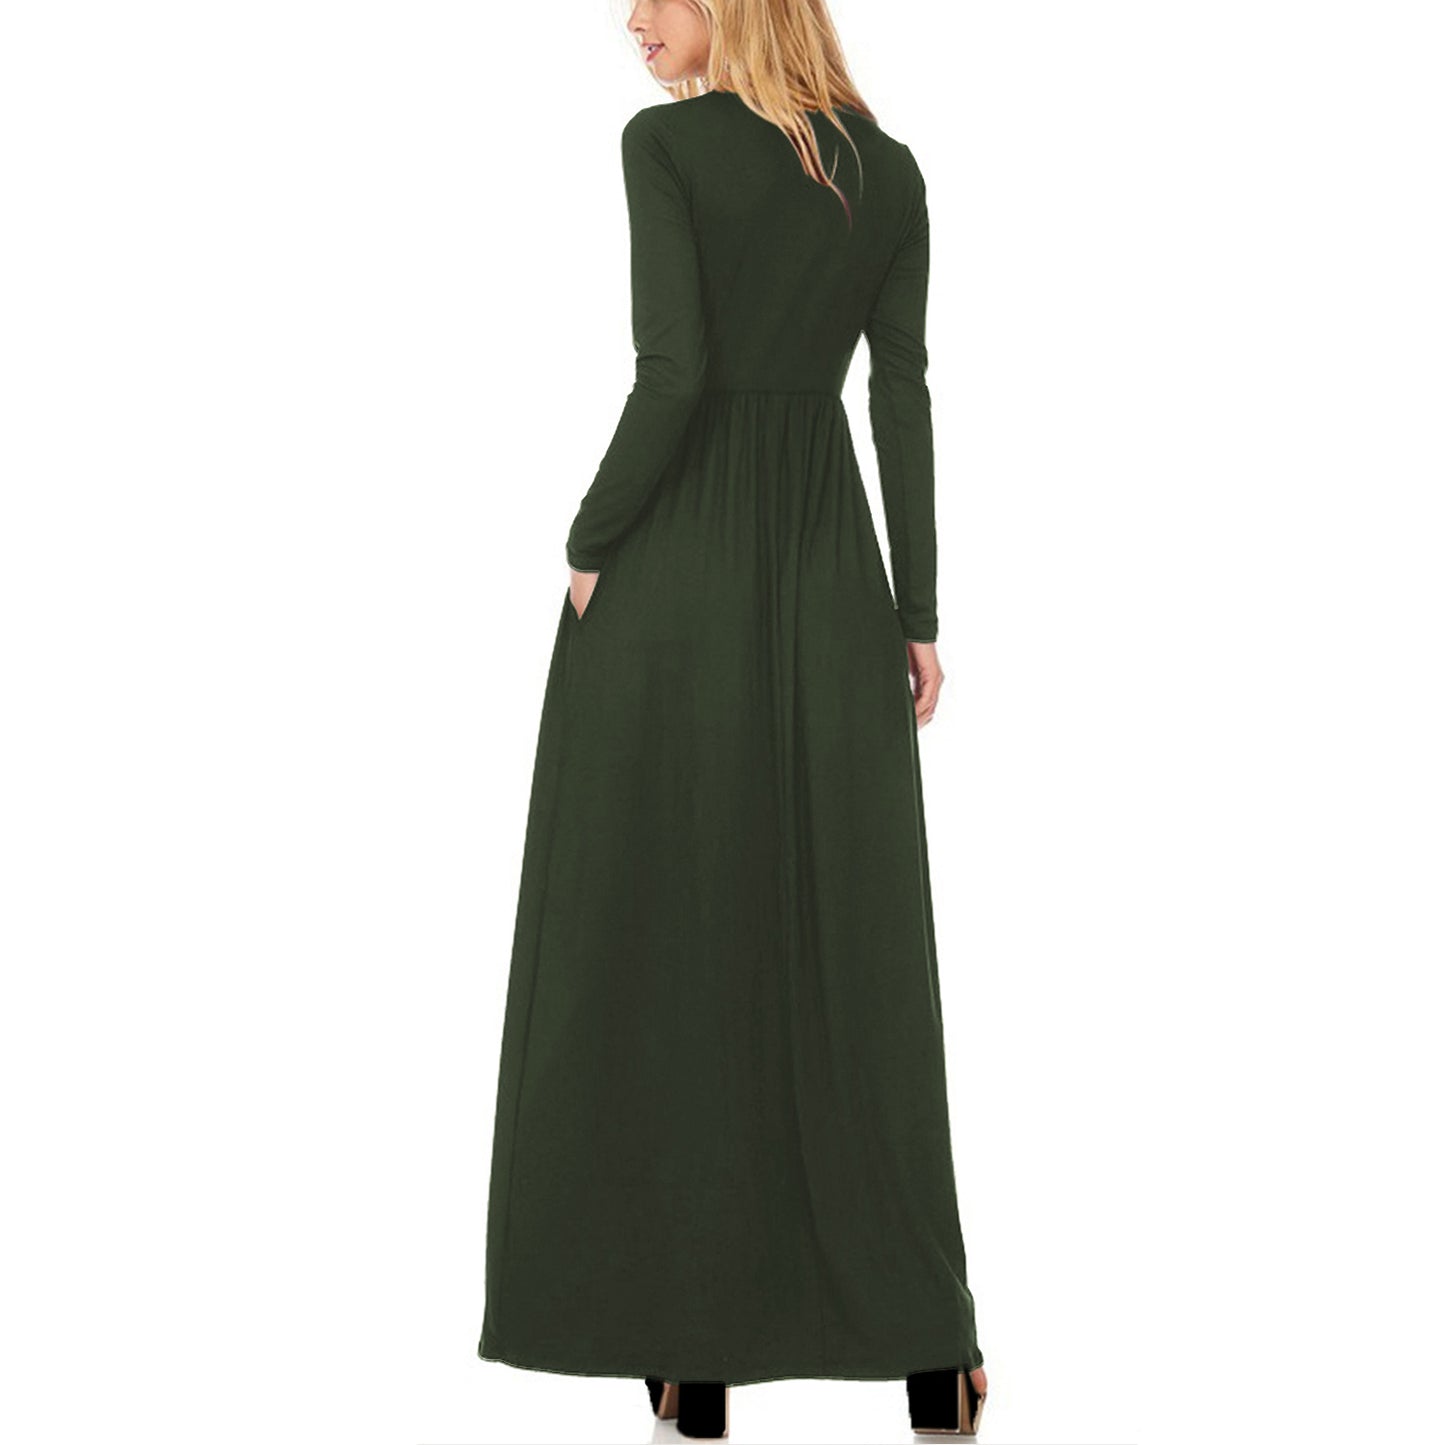 Women's Casual Long Sleeve Maternity Maxi Dress